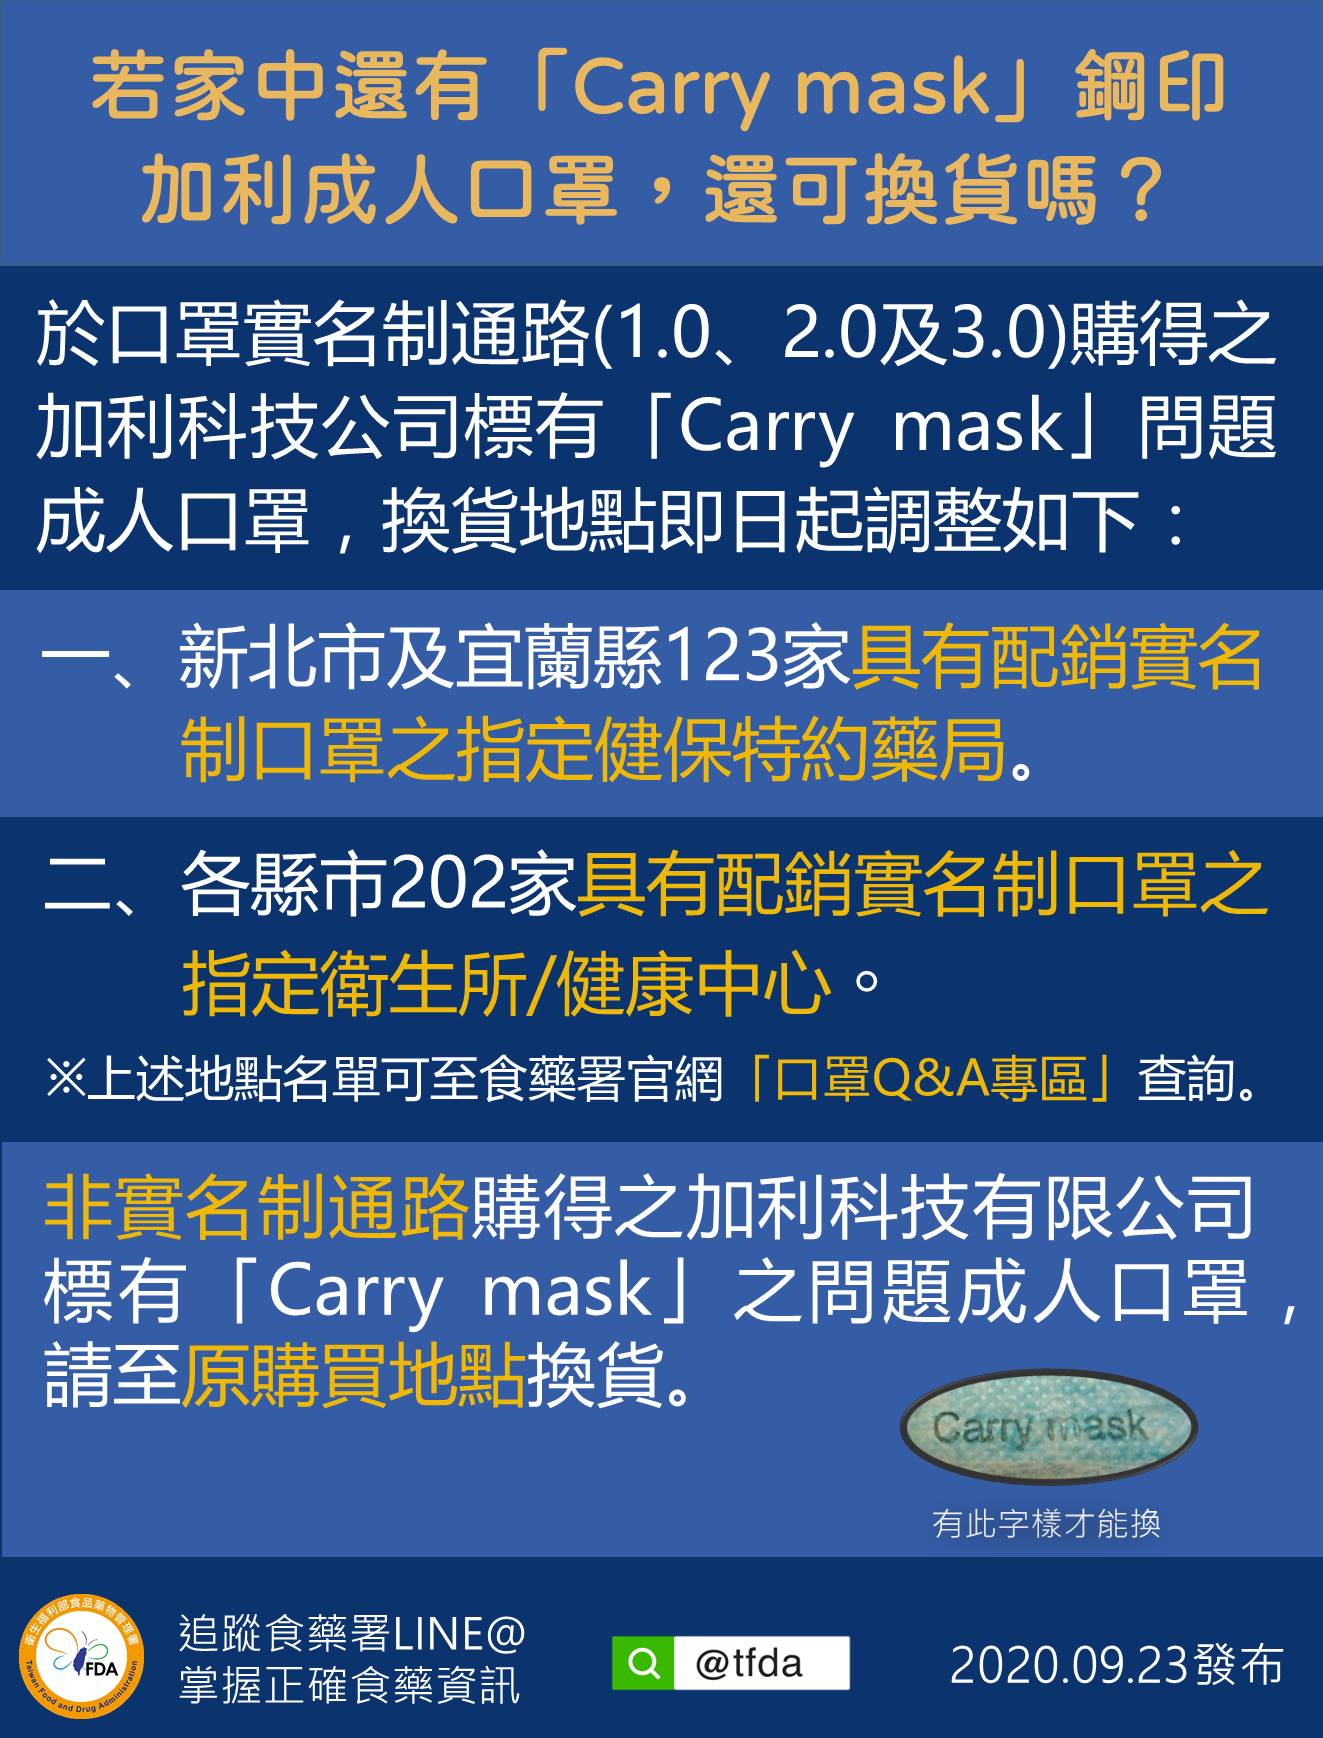 若家中還有「Carry mask」鋼印加利成人口罩，還可換貨嗎?